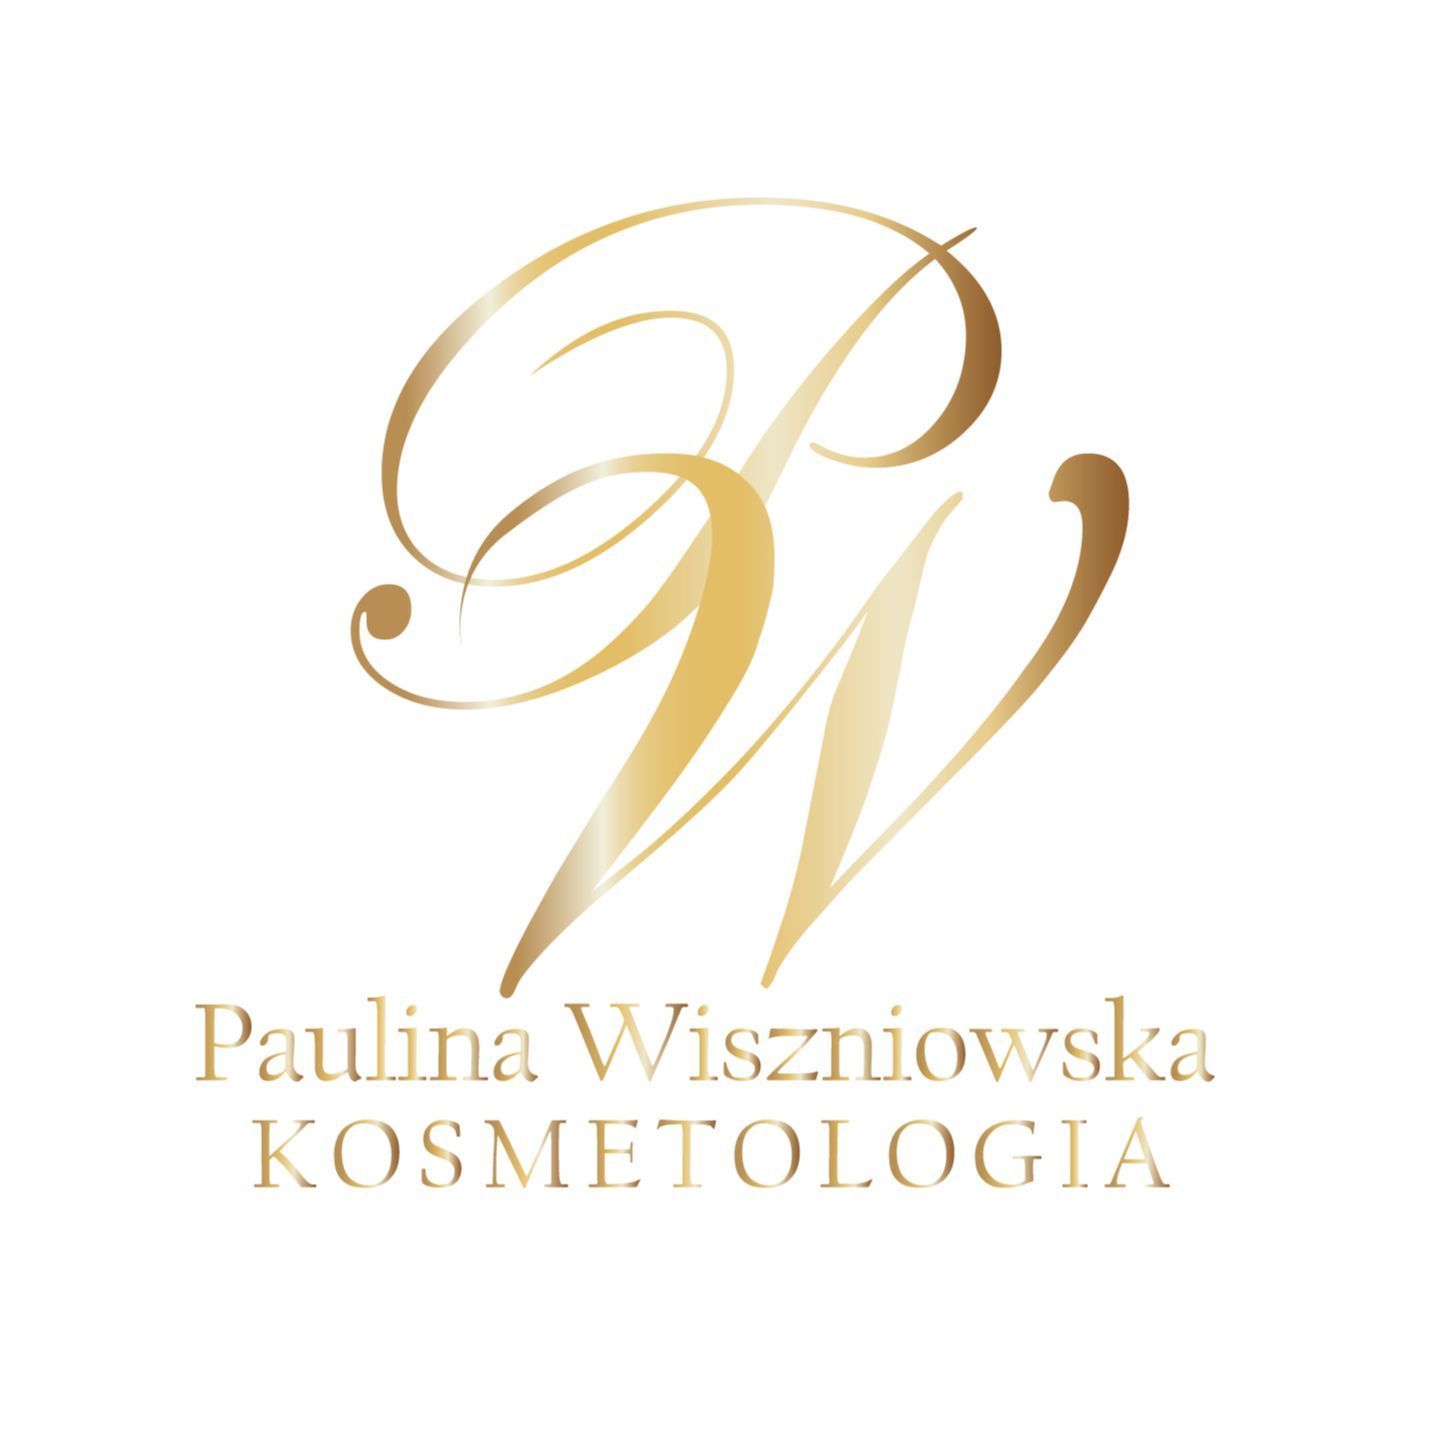 Paulina Wiszniowska Kosmetologia, Kazimierza wielkiego 7/1, 65-001, Zielona Góra